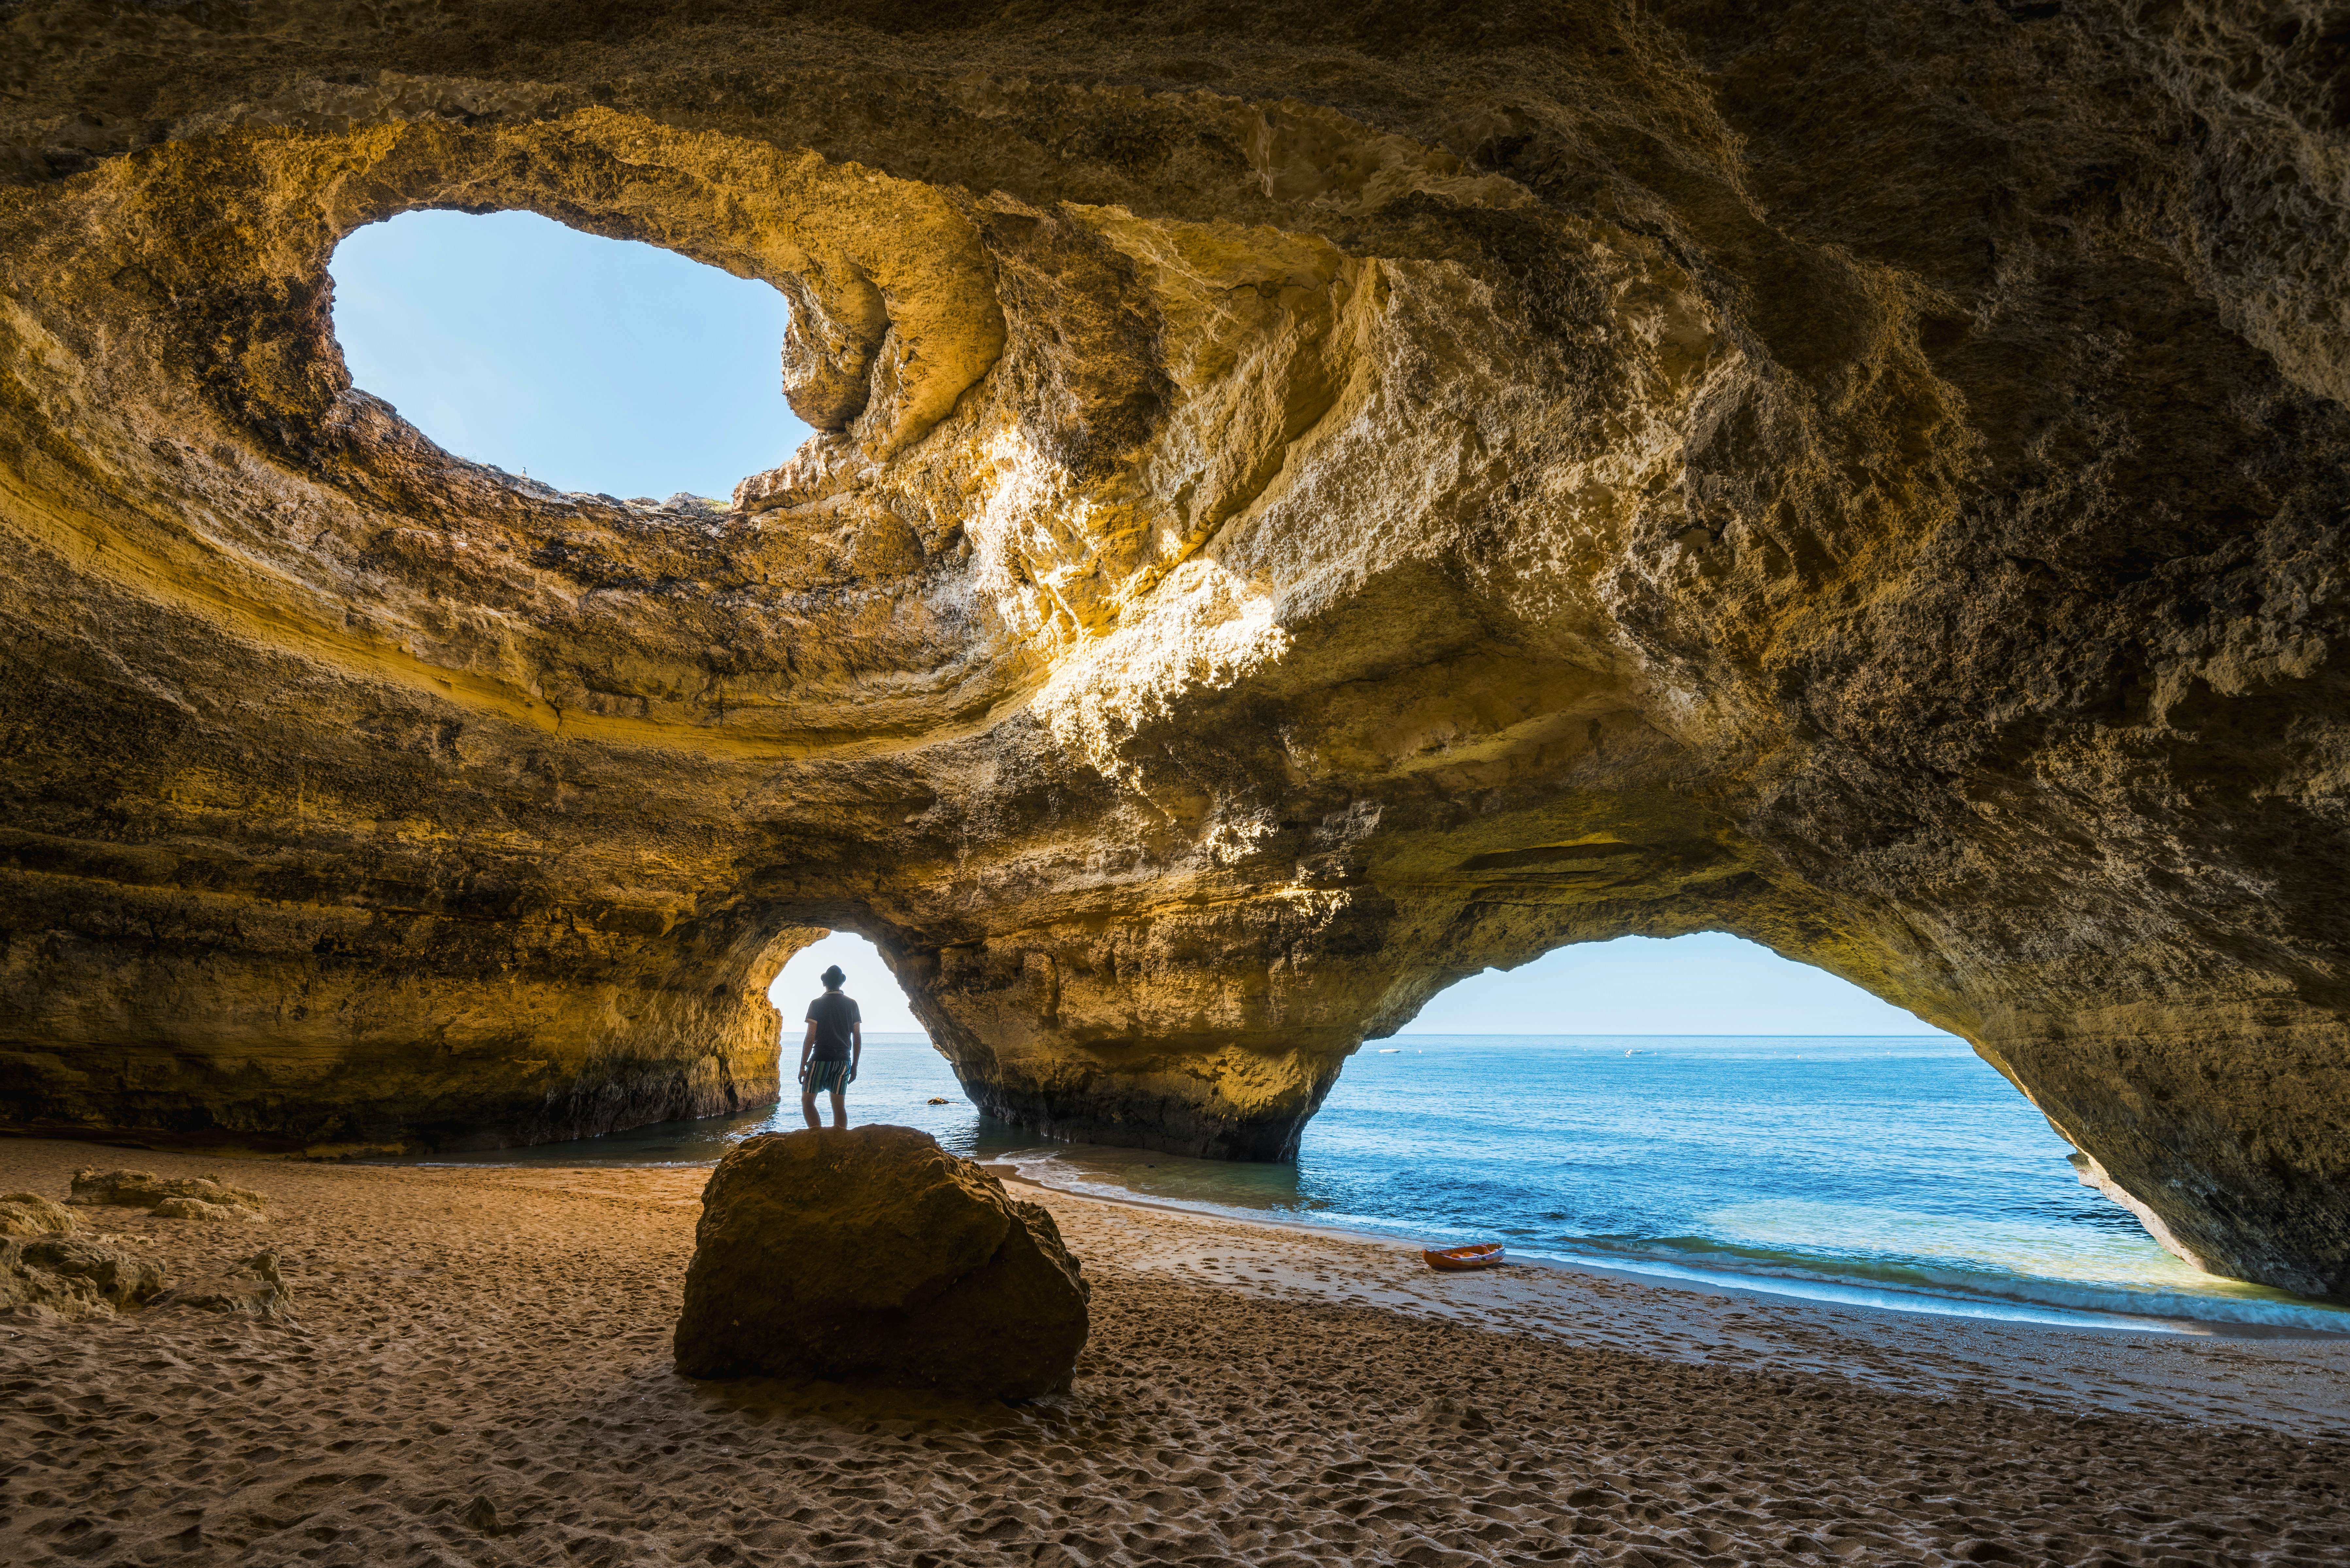 The Algarve Region ‹ Algarve Guide